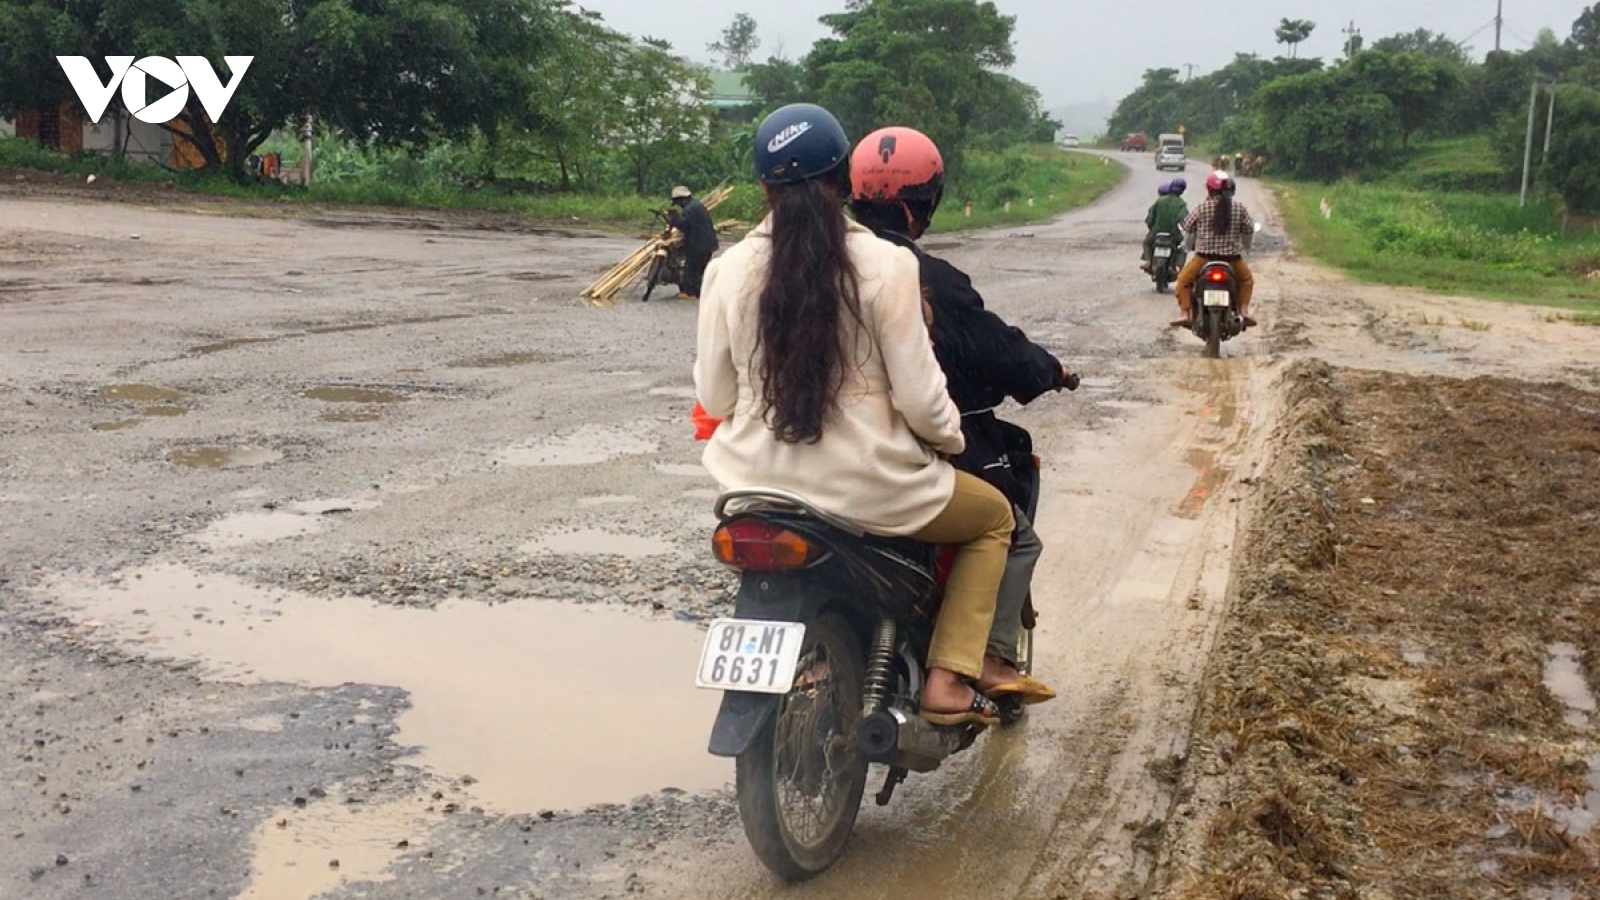 Quốc lộ 19 qua Gia Lai bị hư hỏng: Cục quản lý đường bộ chỉ đạo gấp